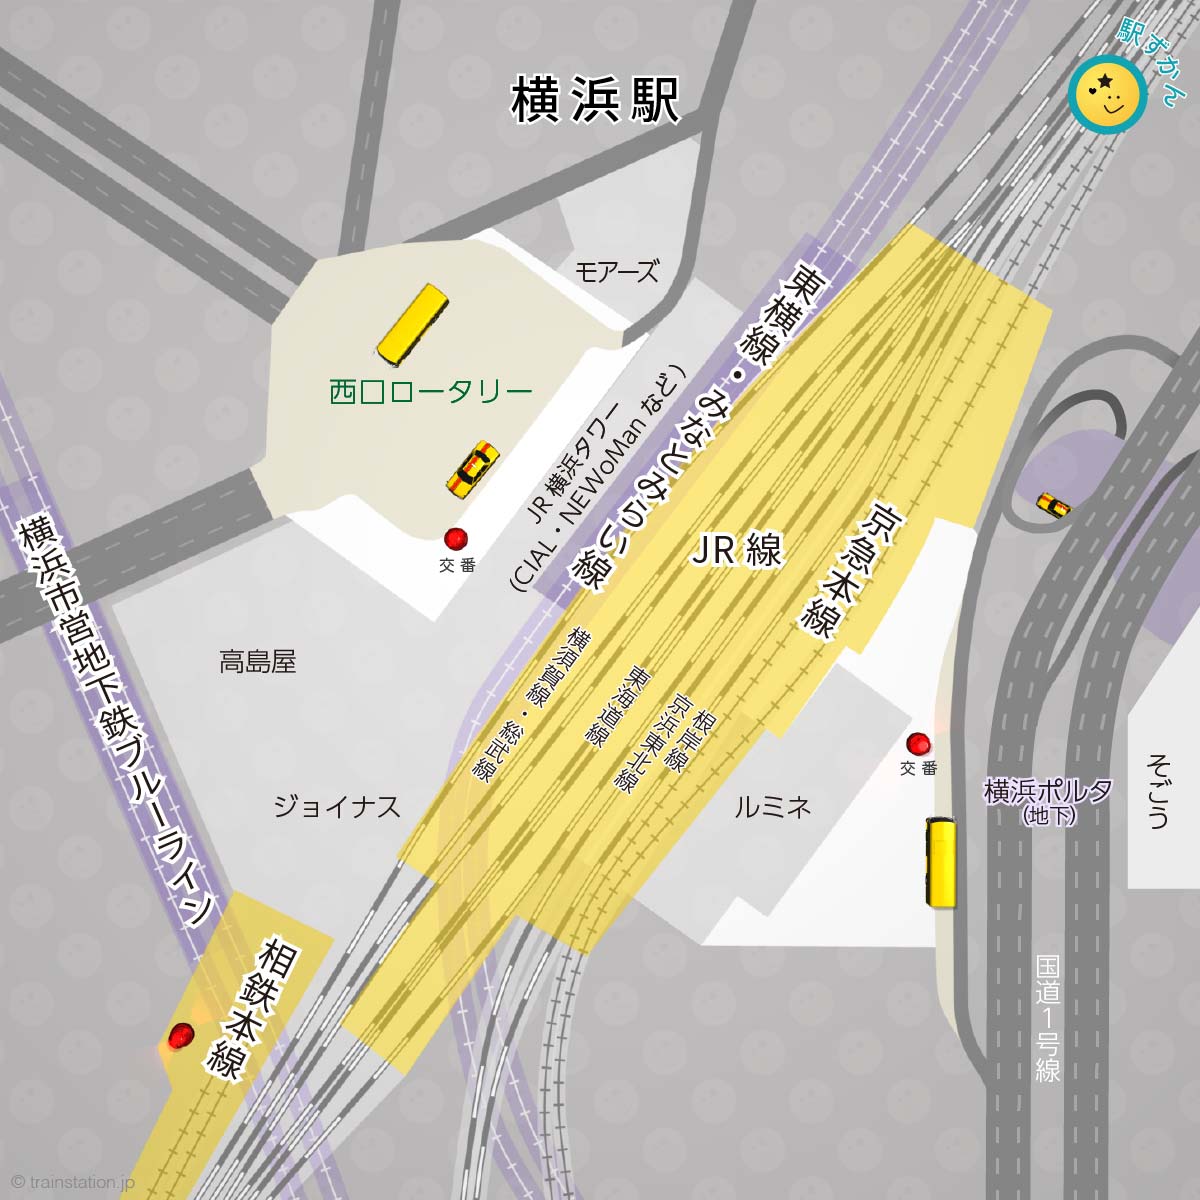 横浜駅路線図と周辺マップ